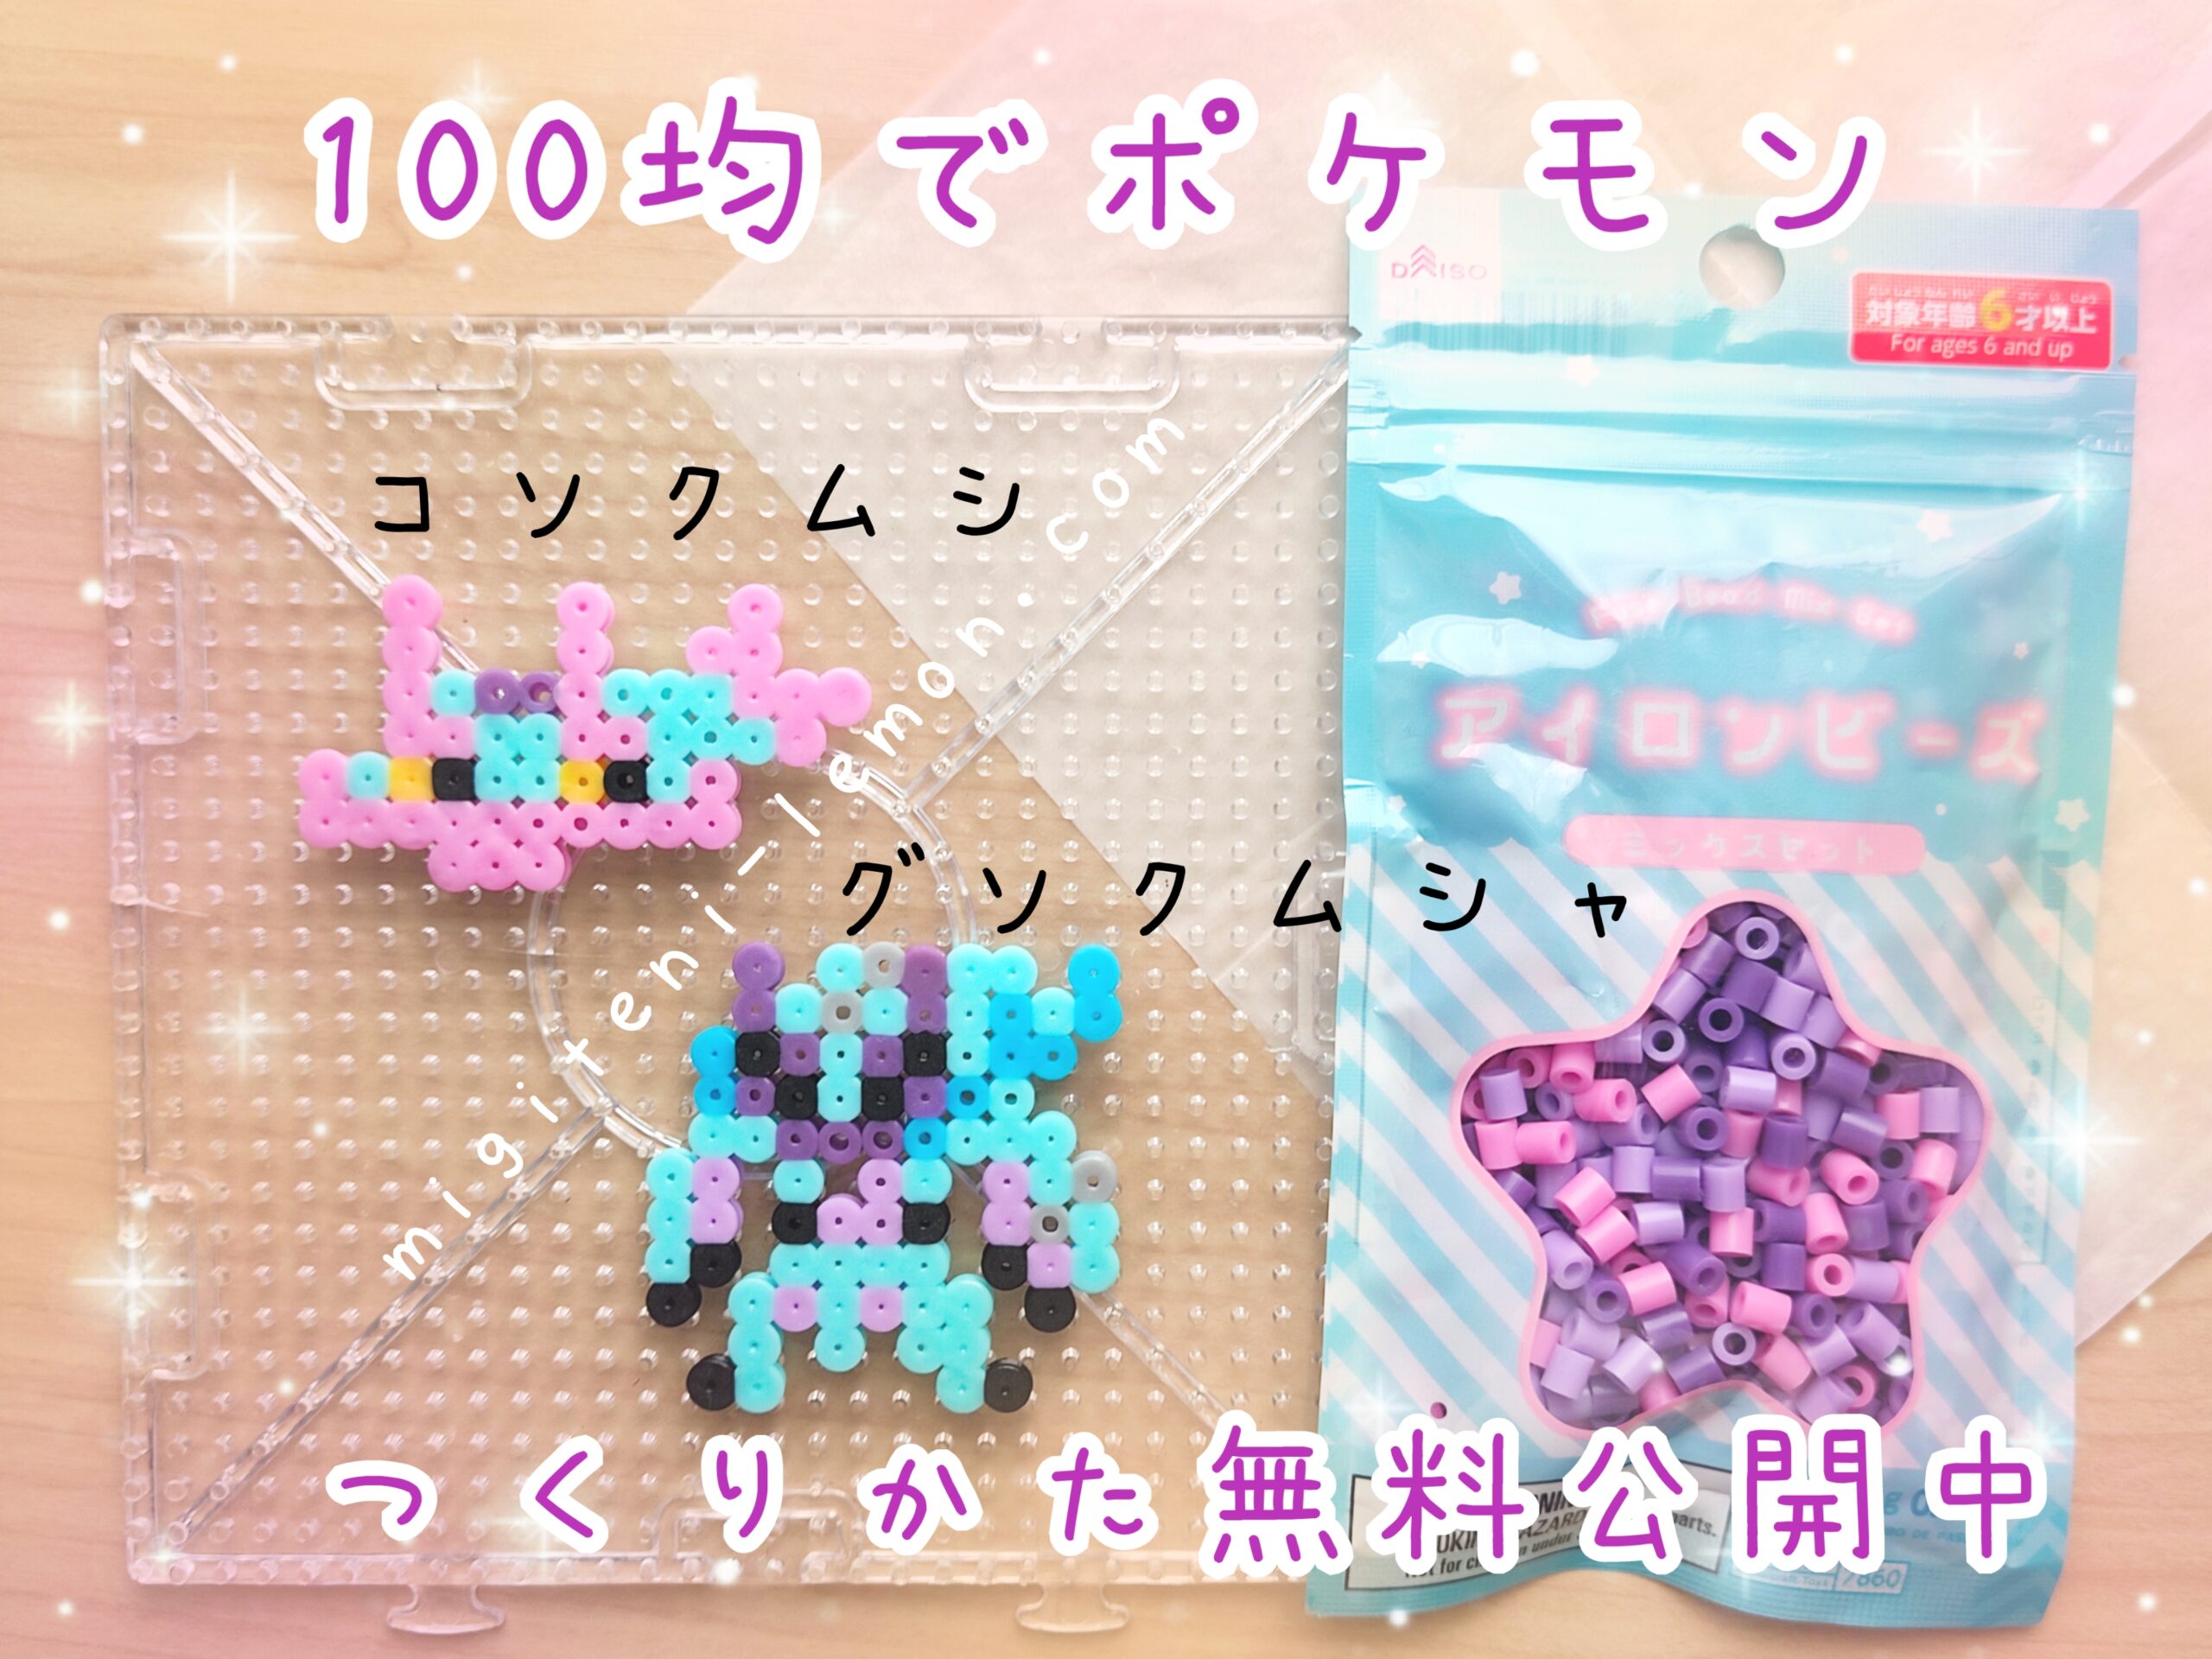 kosokumushi-gusokumusha-pokemon-beads-handmade